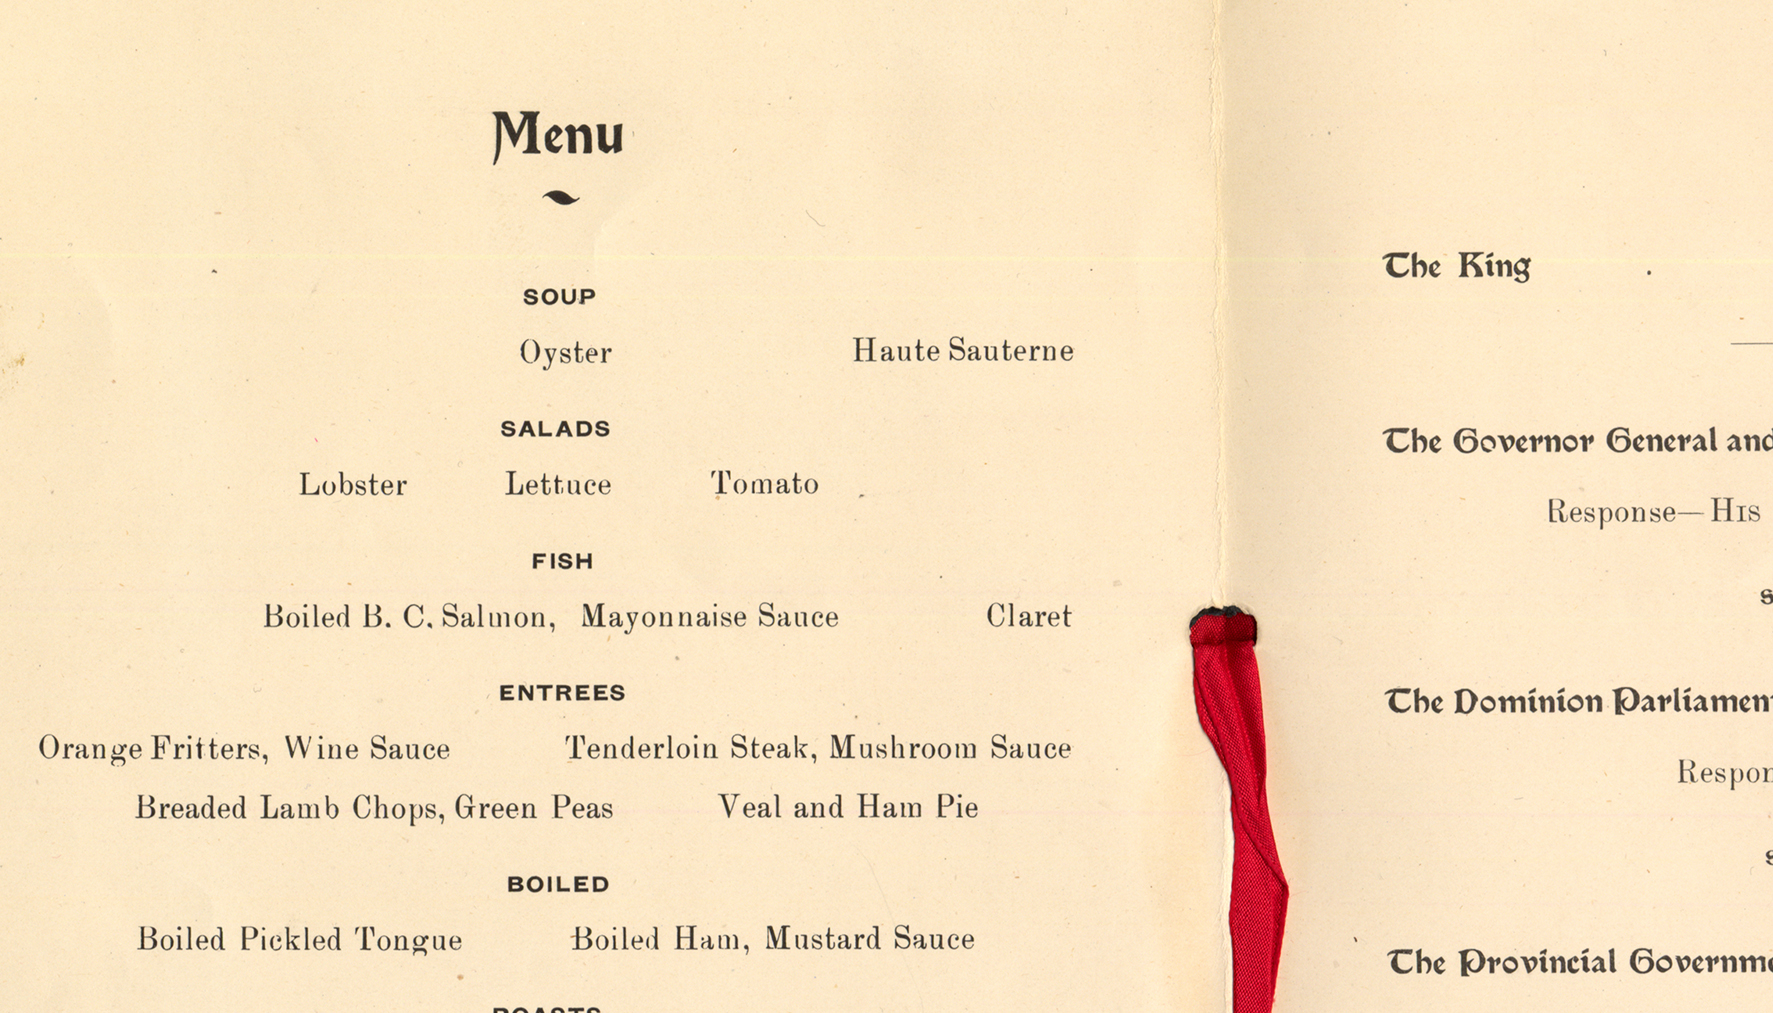 Arlington Hotel banquet menu, 1906